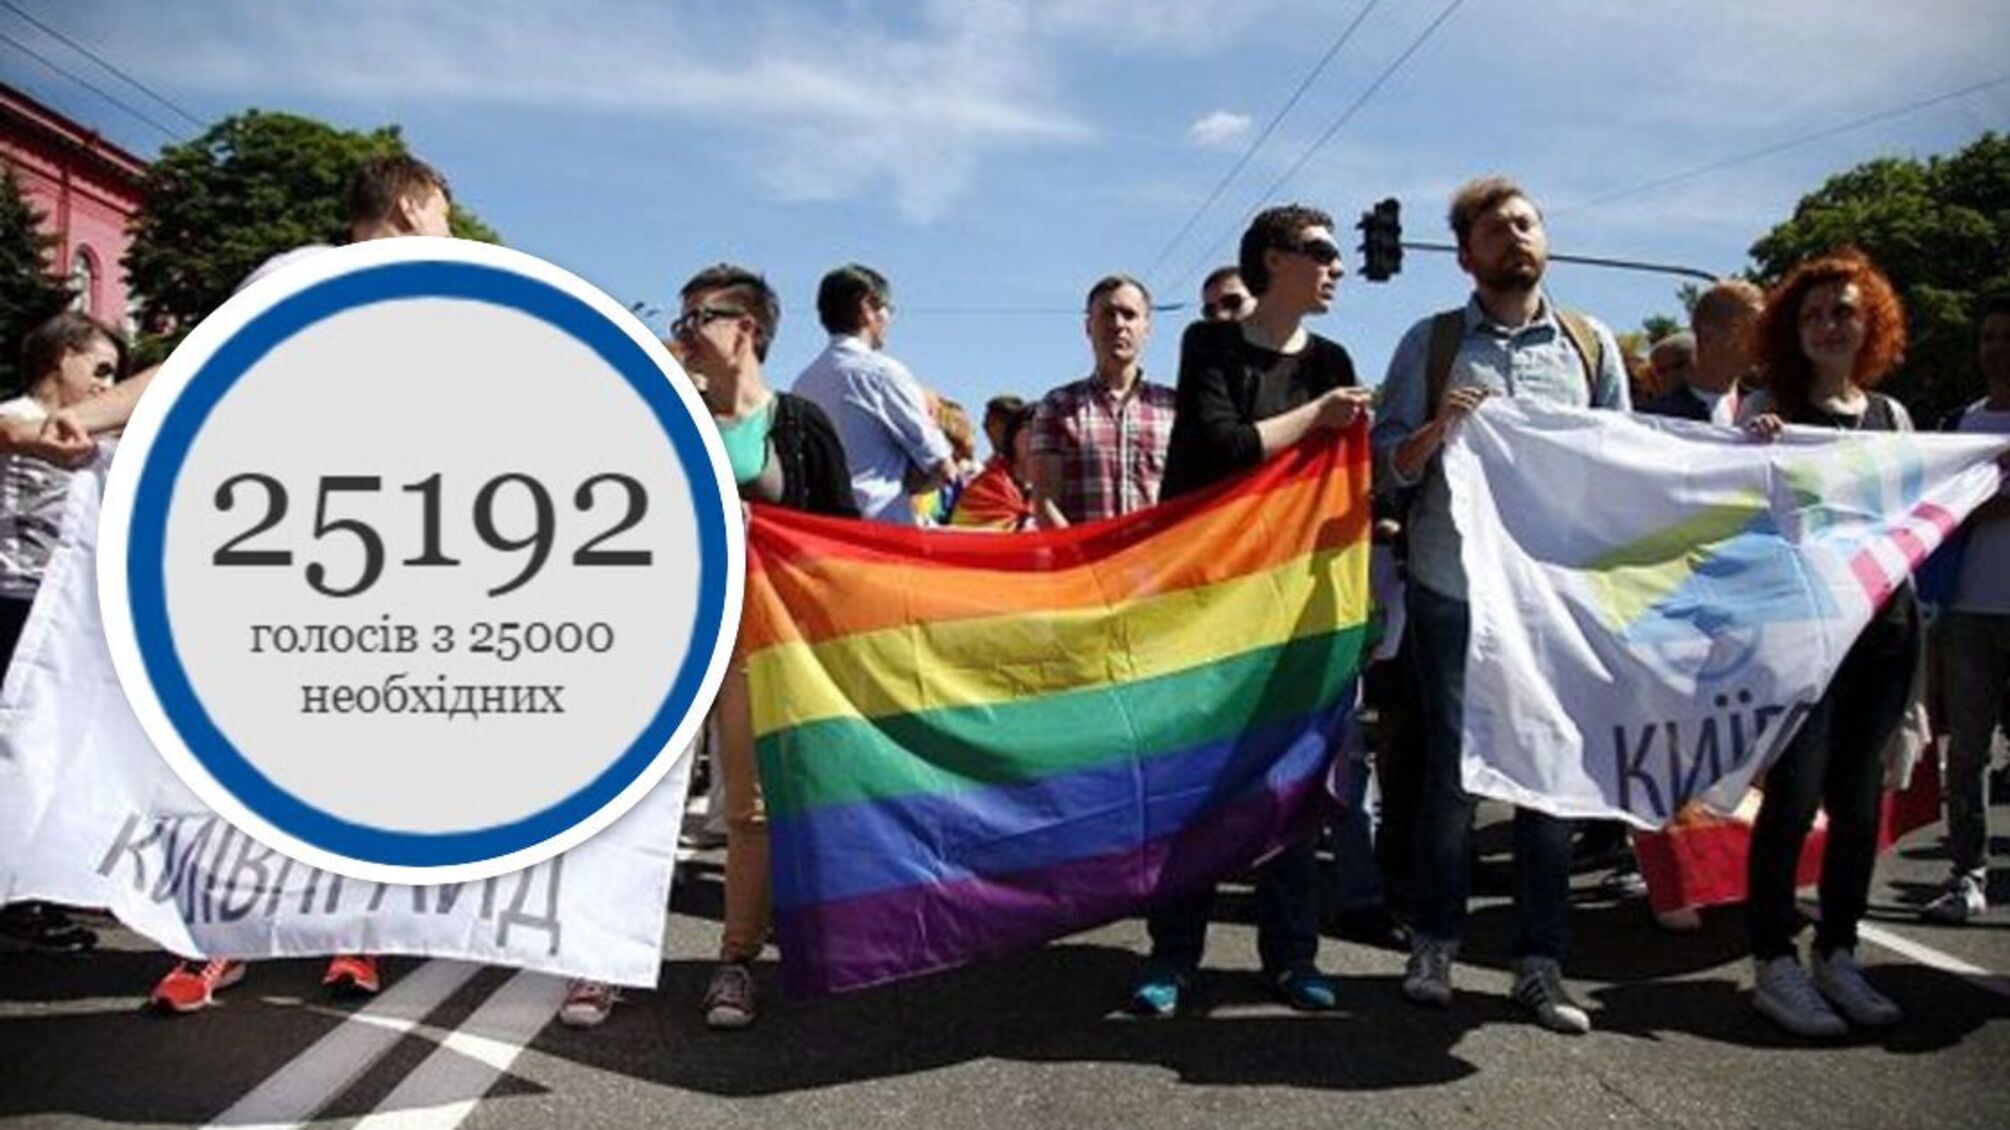 Петиция о легализации однополых браков набрала 25 тысяч голосов